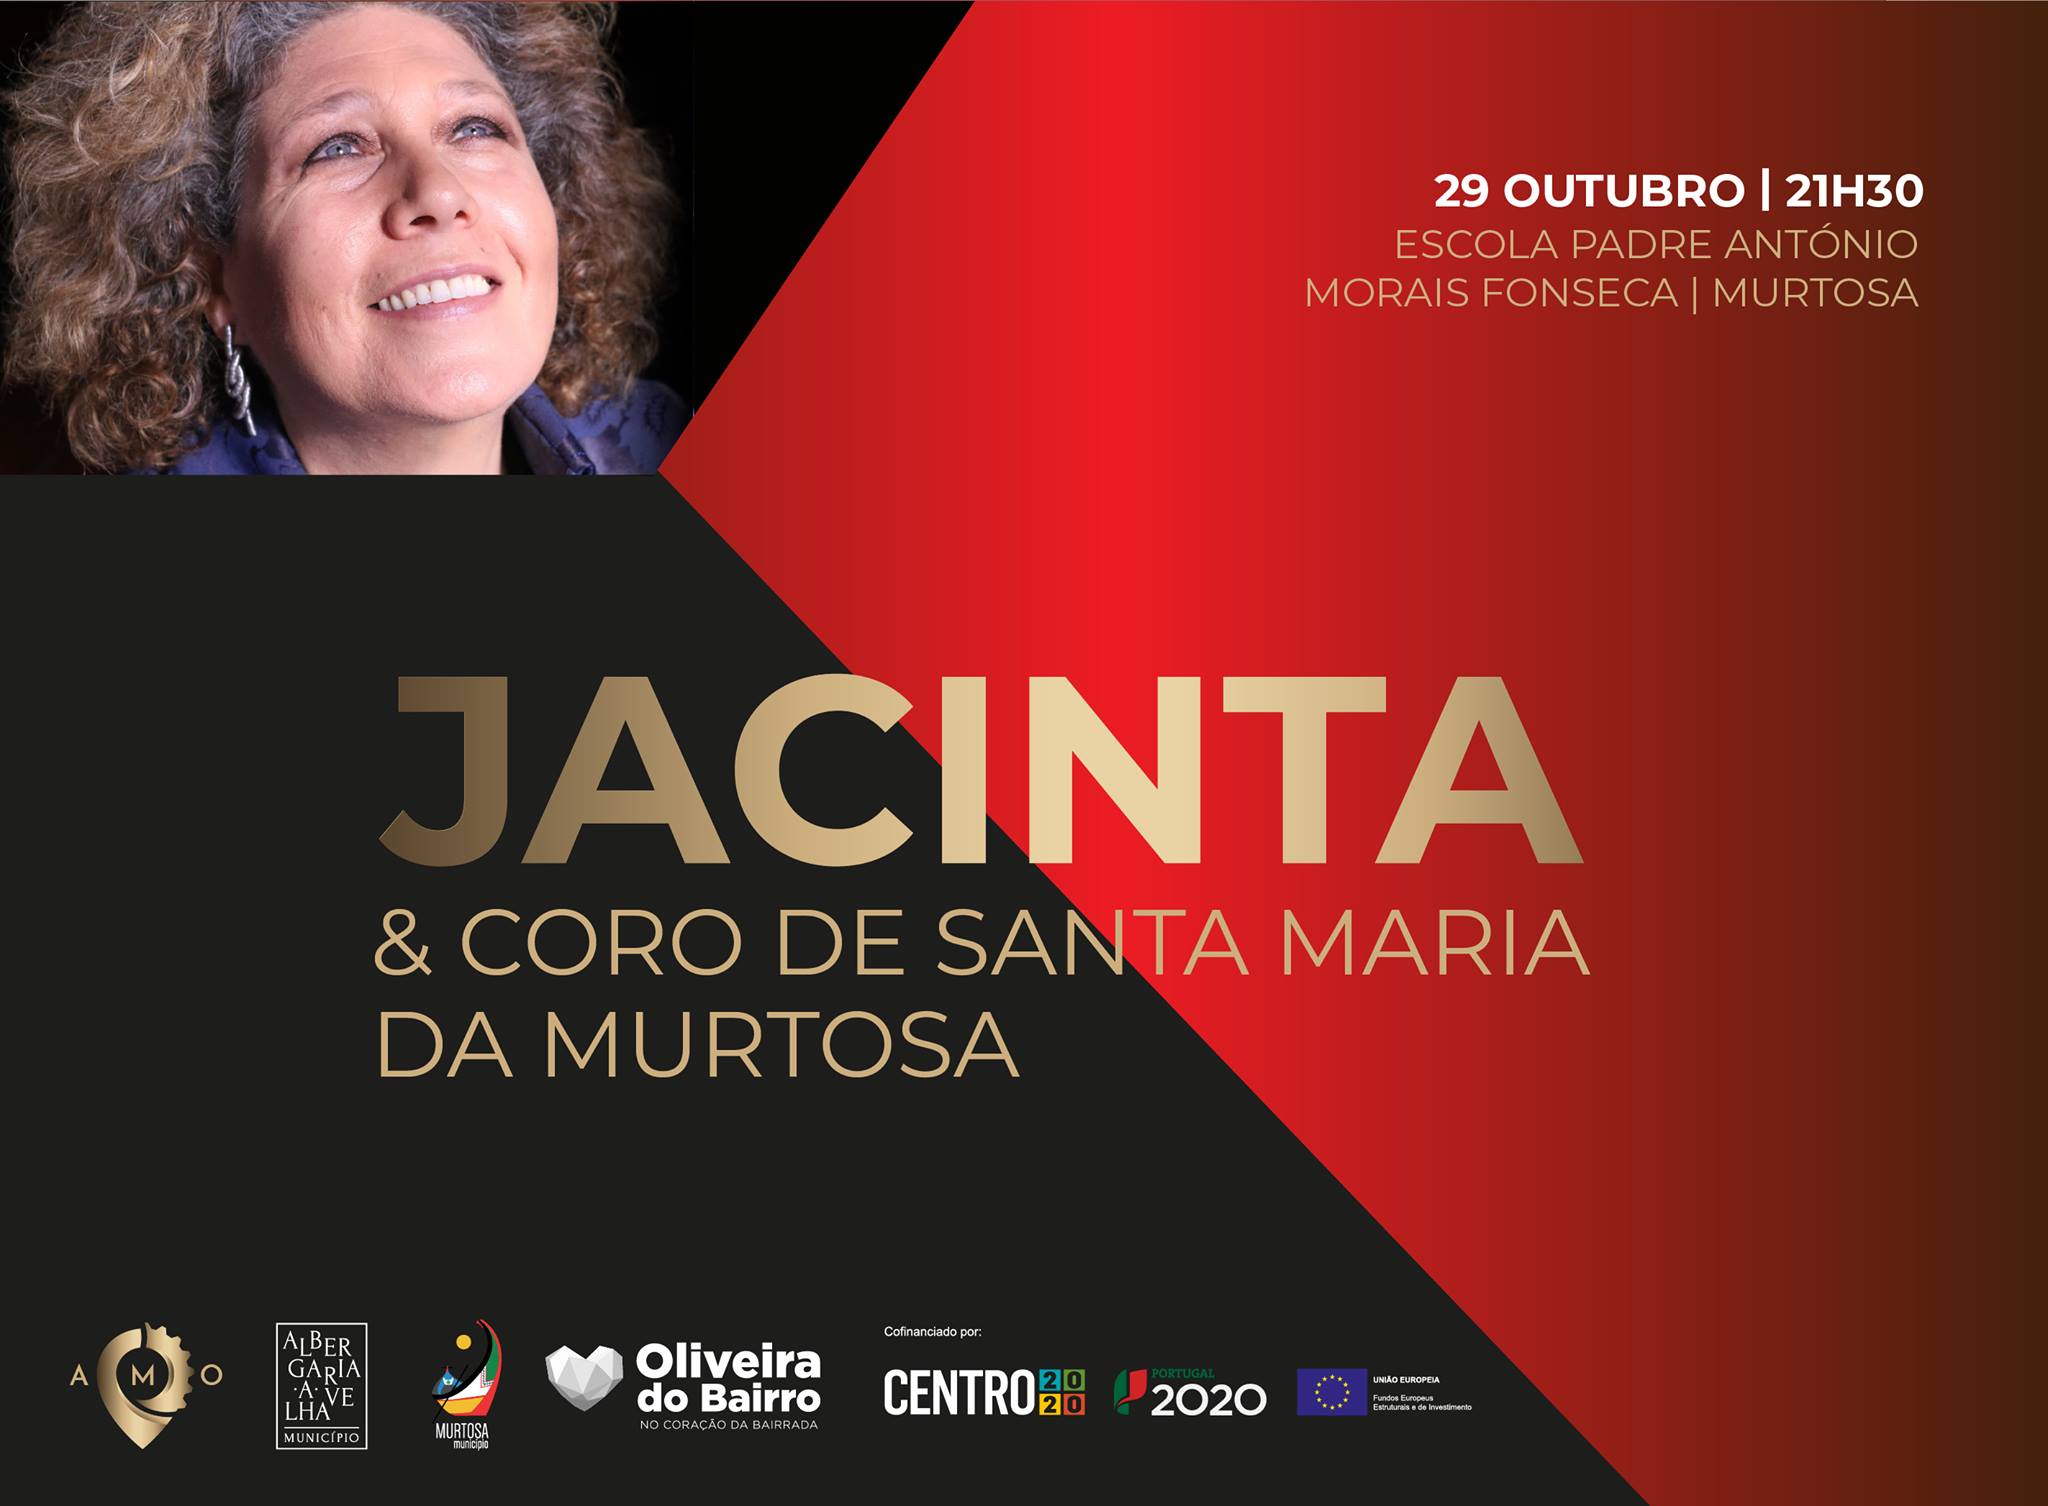 JACINTA & CORO DE SANTA MARIA DA MURTOSA